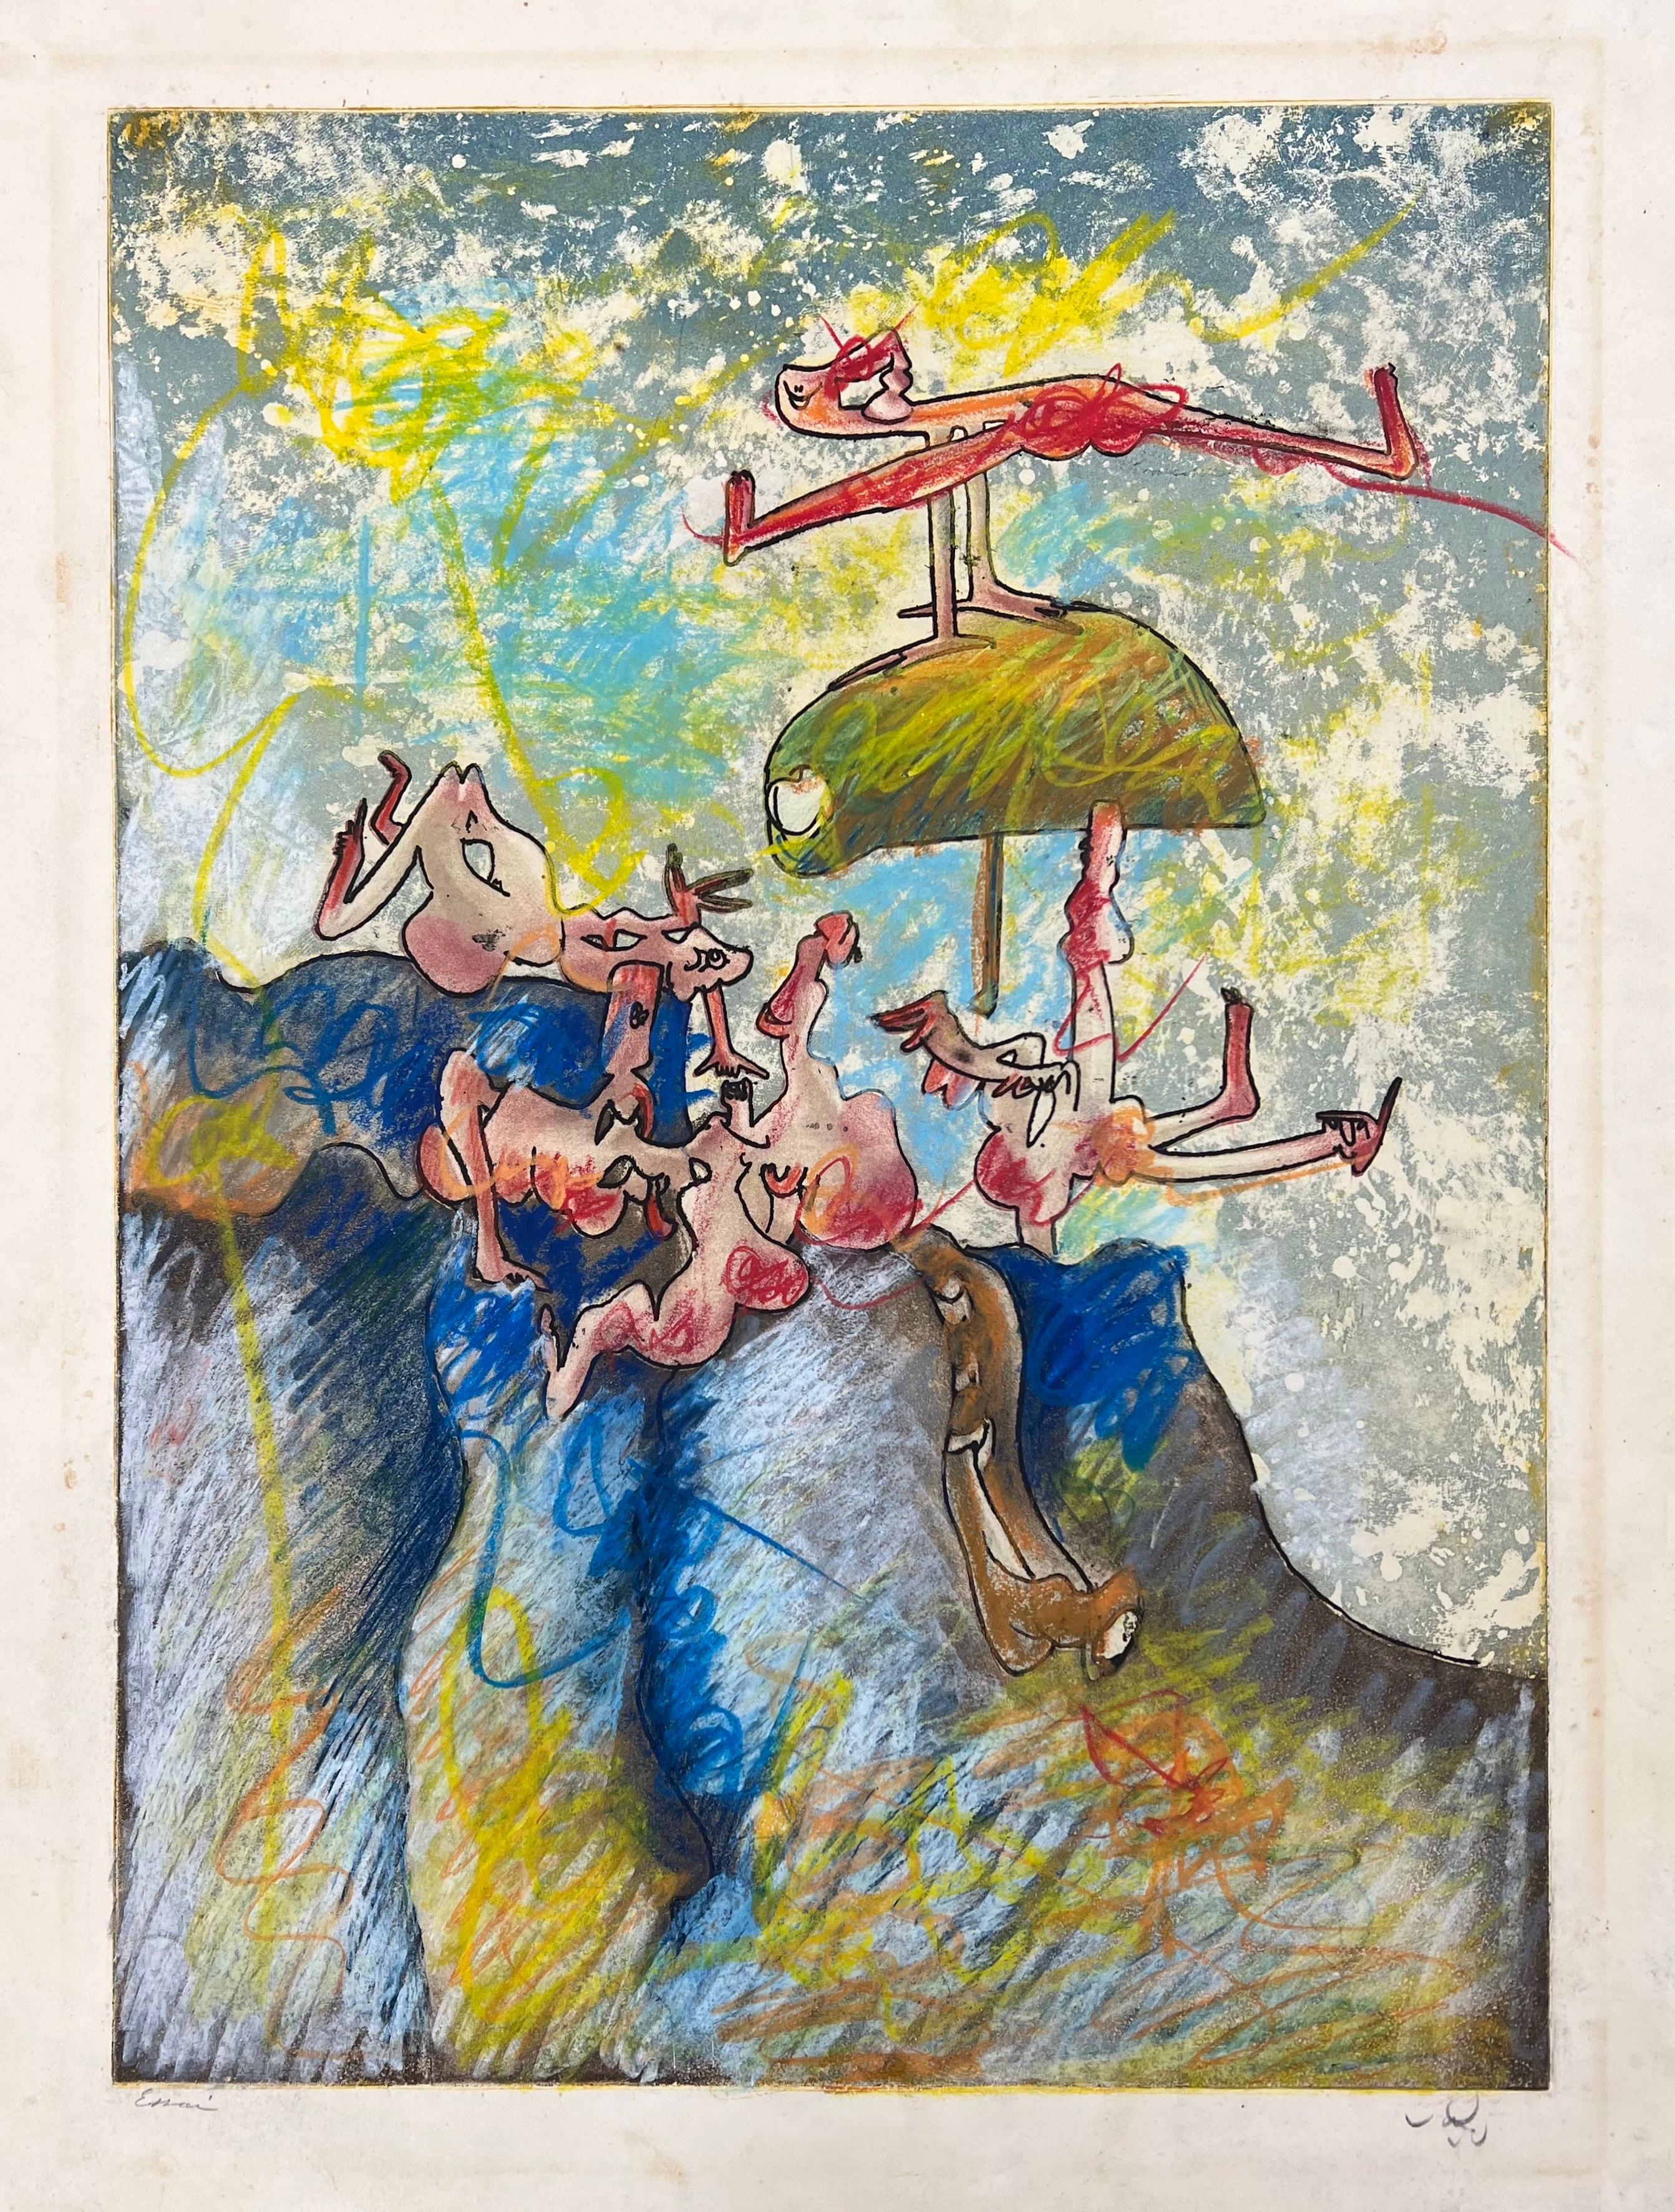 Roberto Sebastián Matta (1911-2002)
Feuilles ouvertes, 1971
Radierung und Aquatinta, großflächig handkoloriert mit Pastell
Mit Bleistift signiert und mit dem Vermerk "Essai" versehen, ein Probedruck aus der Auflage von 100 Stück, herausgegeben von